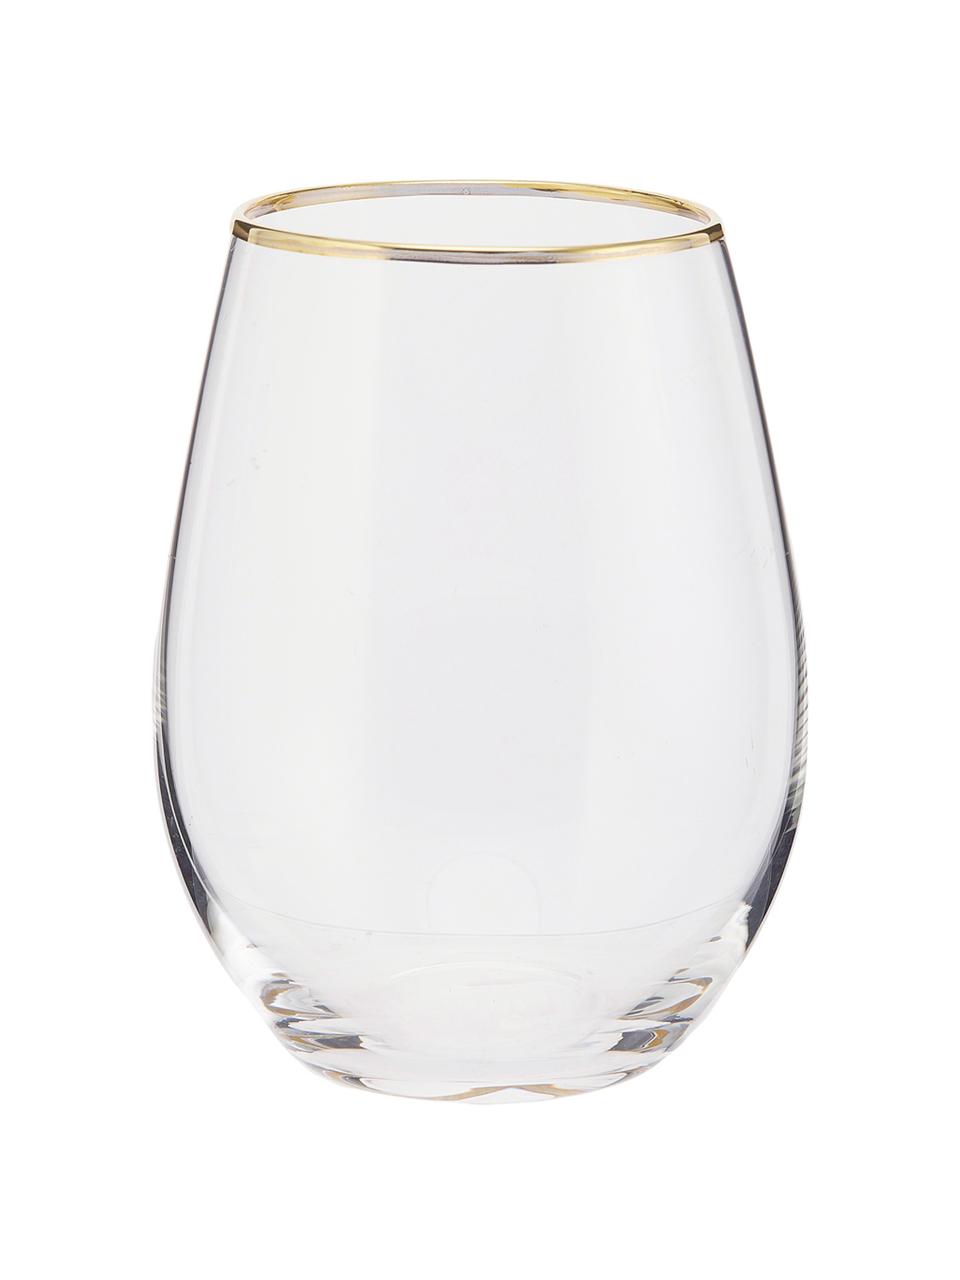 Szklanka Chloe, 4 szt., Szkło, Transparentny, odcienie złotego, Ø 9 x W 12 cm, 600 ml